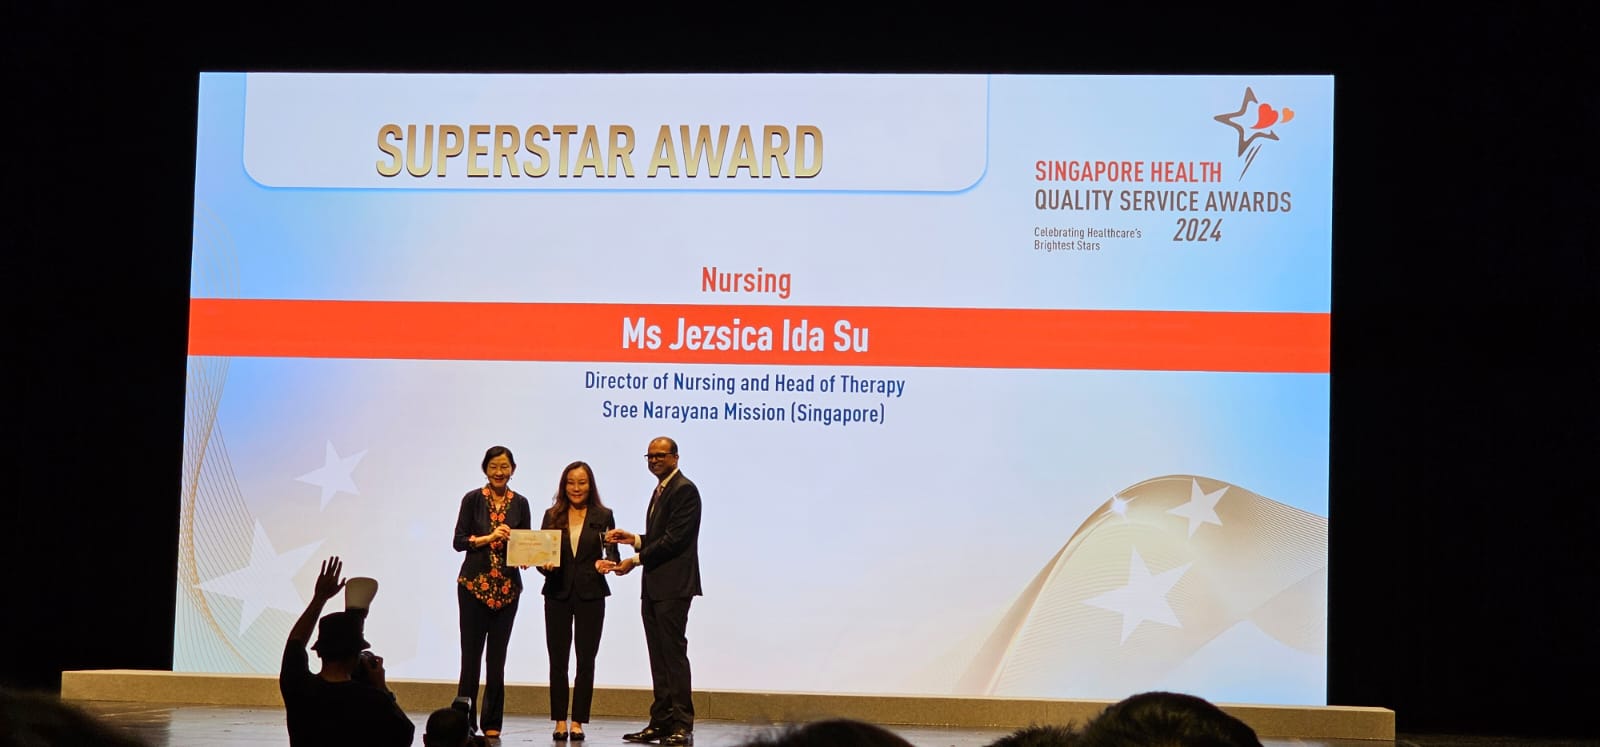 Singapore Health Quality Service Awards 2024